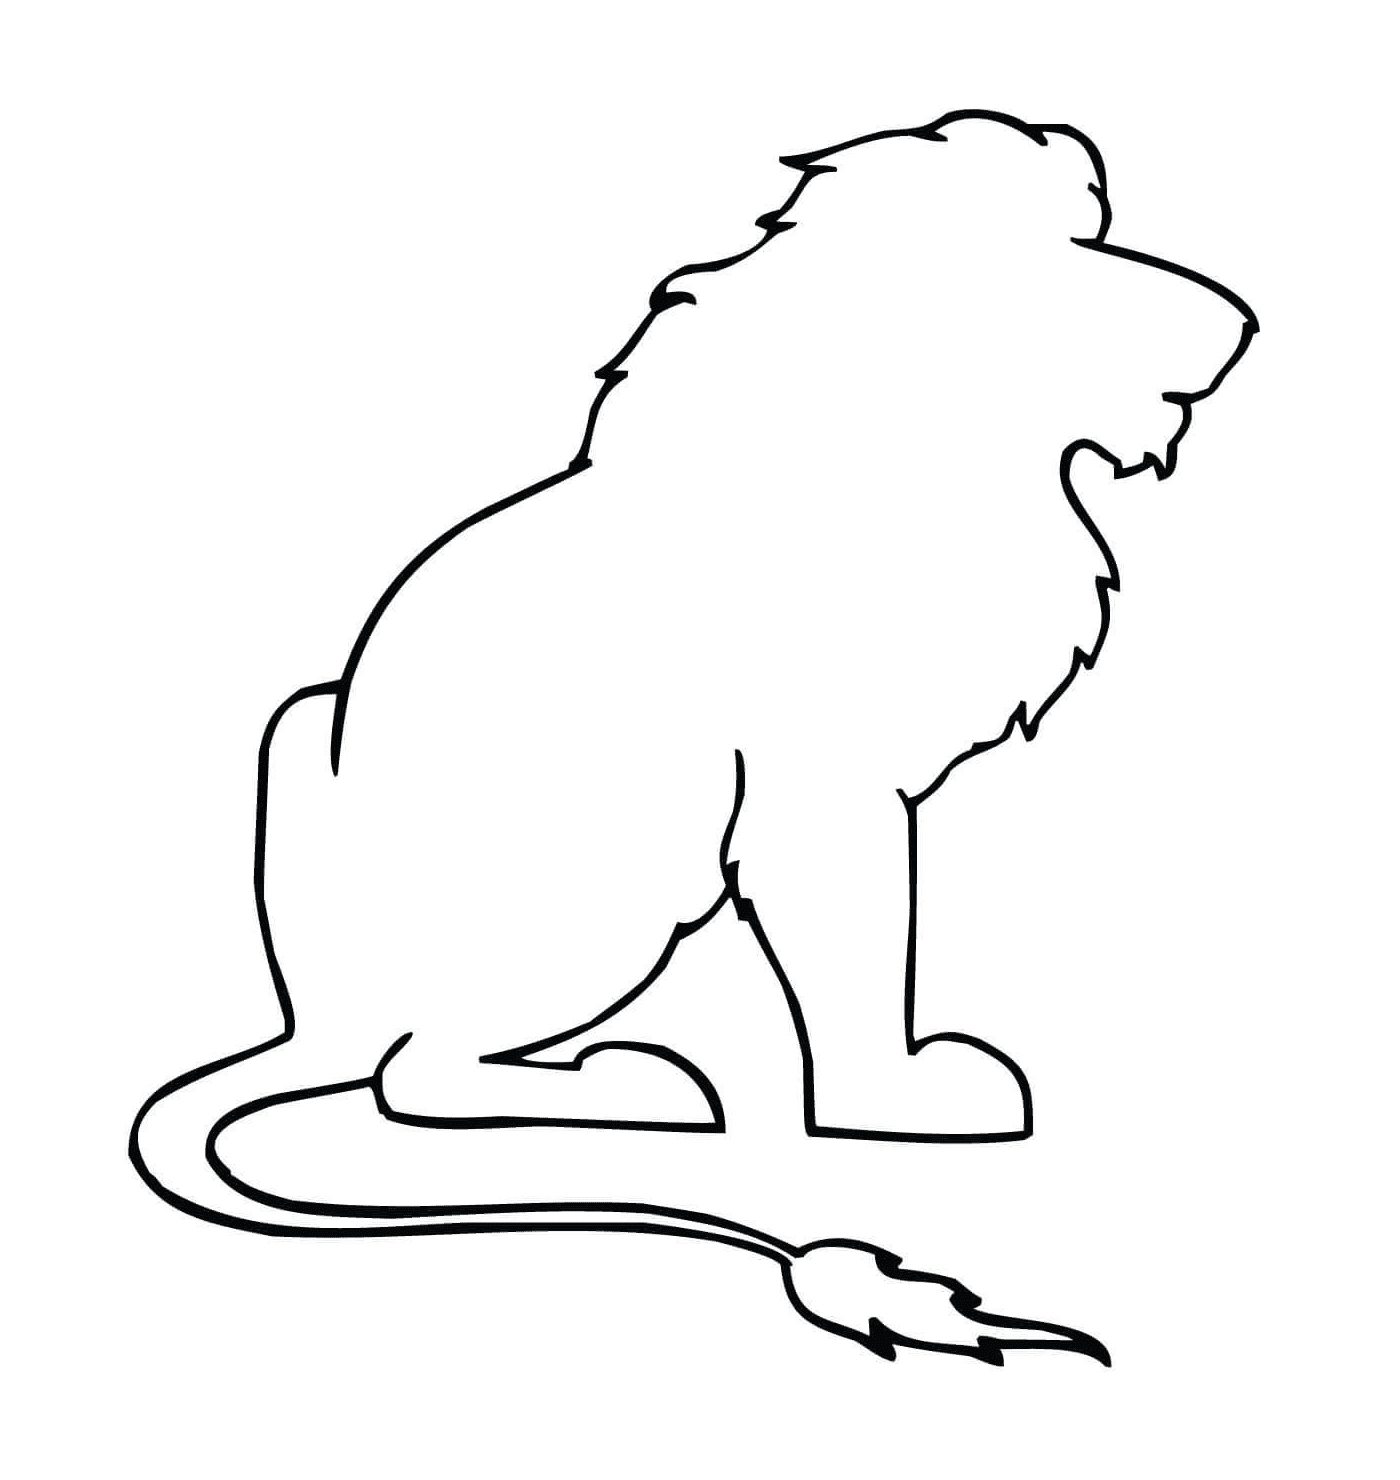  leonessa seduta in silhouette 